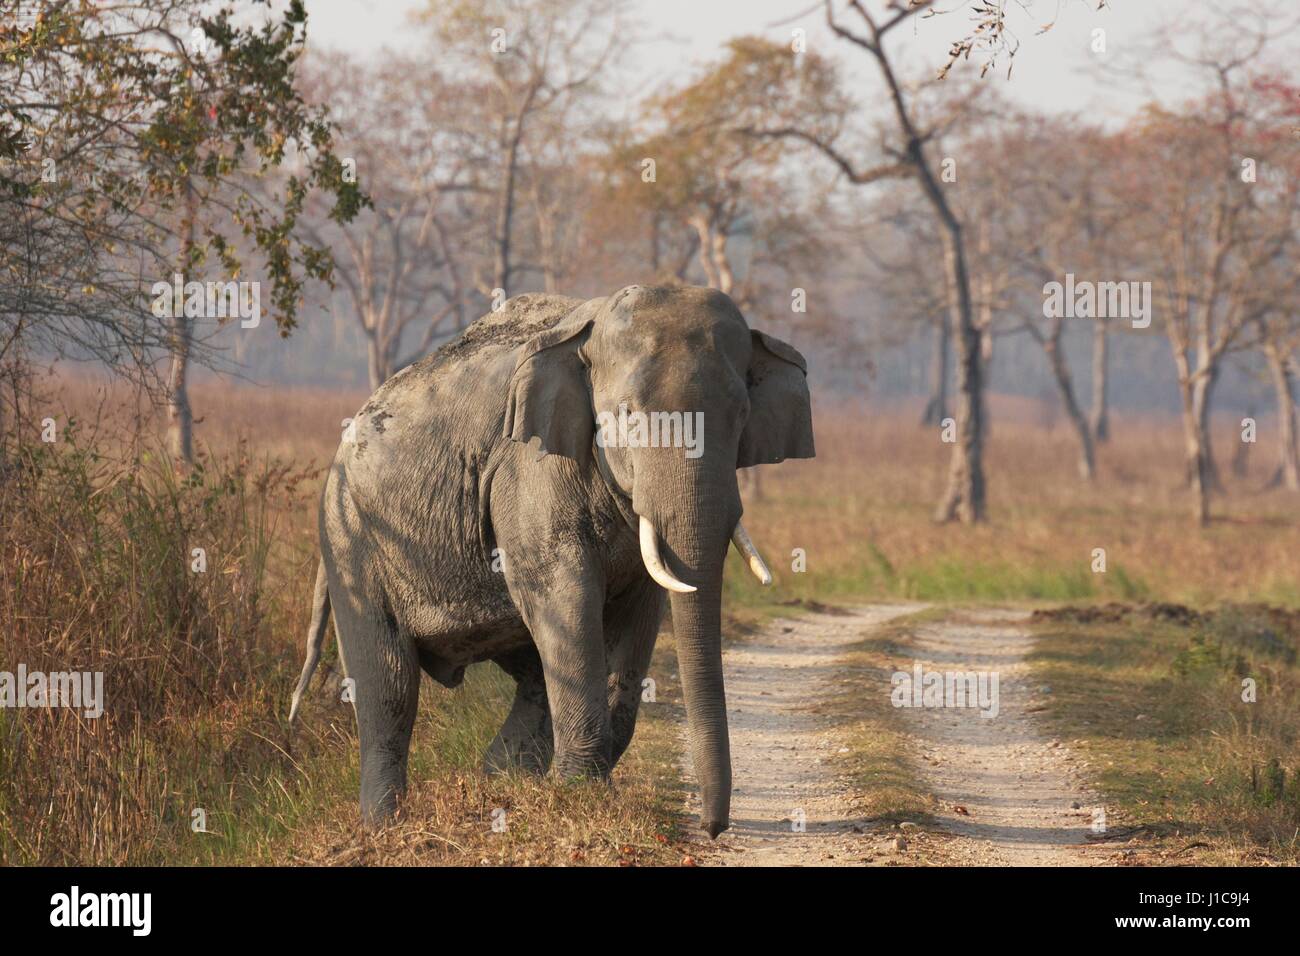 Grand éléphant asiatique mâle sauvage émergeant de la forêt pour traverser une piste dans le parc national de Kaziranga Inde Banque D'Images